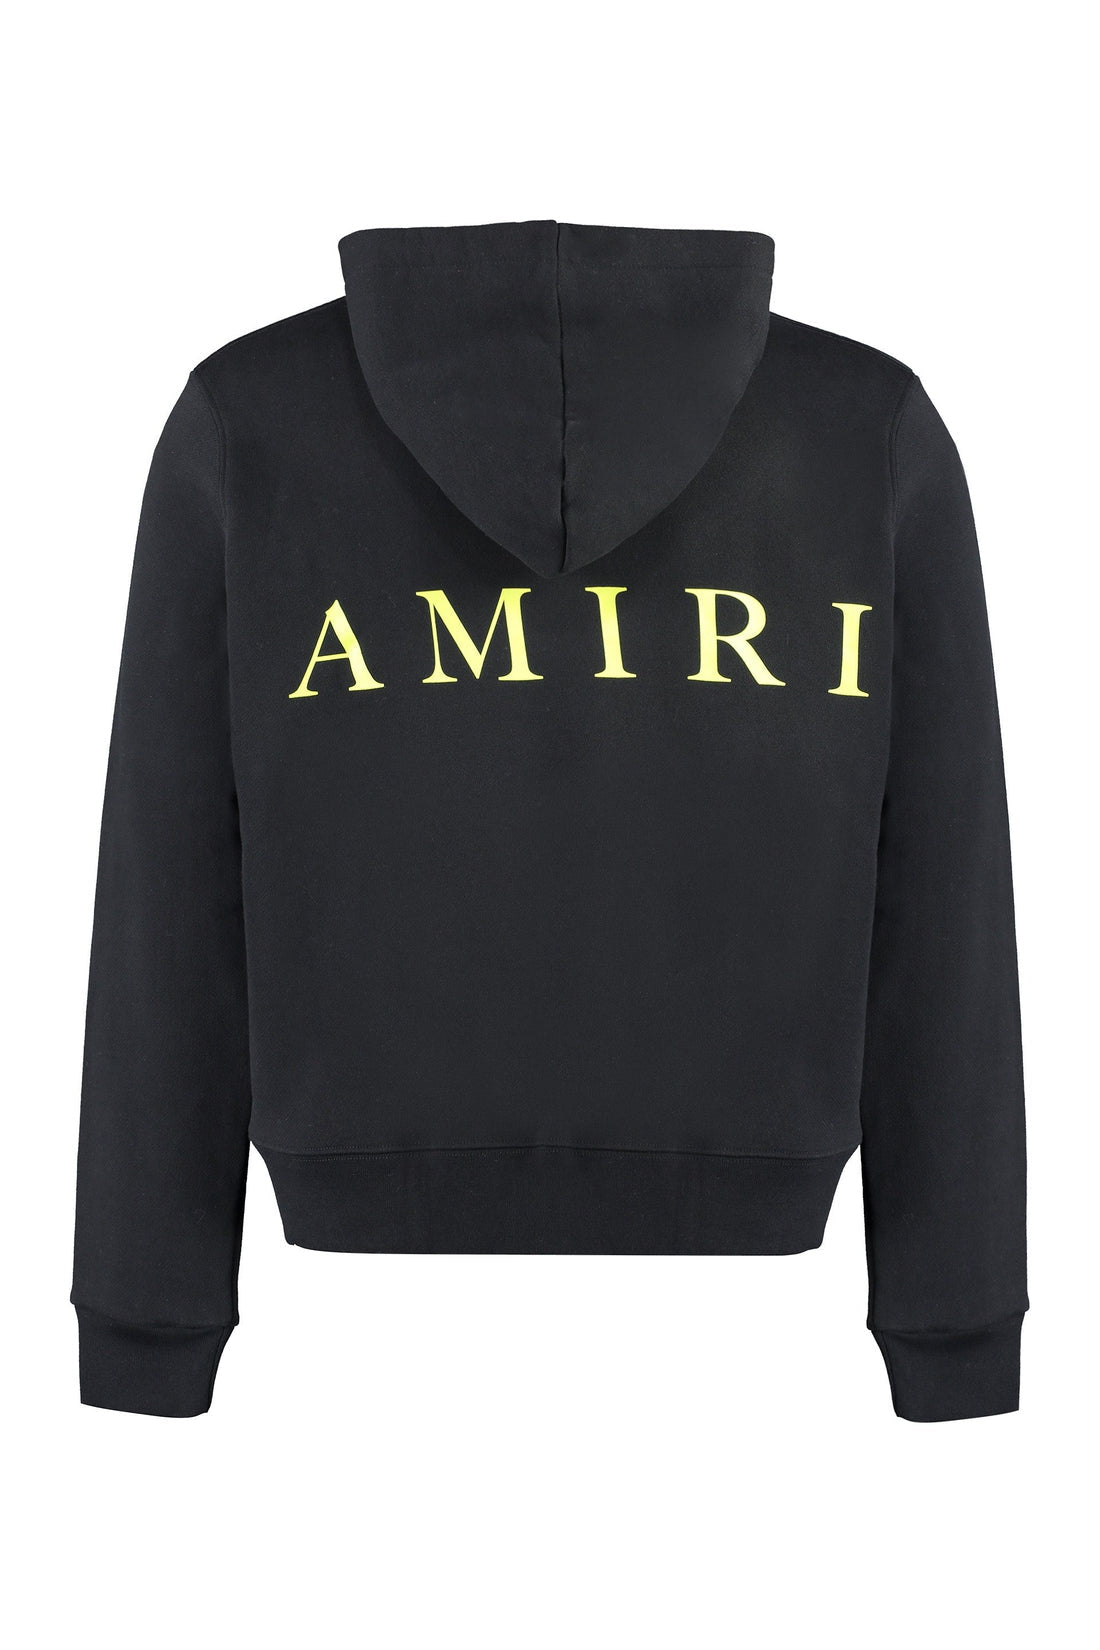 AMIRI-OUTLET-SALE-Cotton hoodie-ARCHIVIST